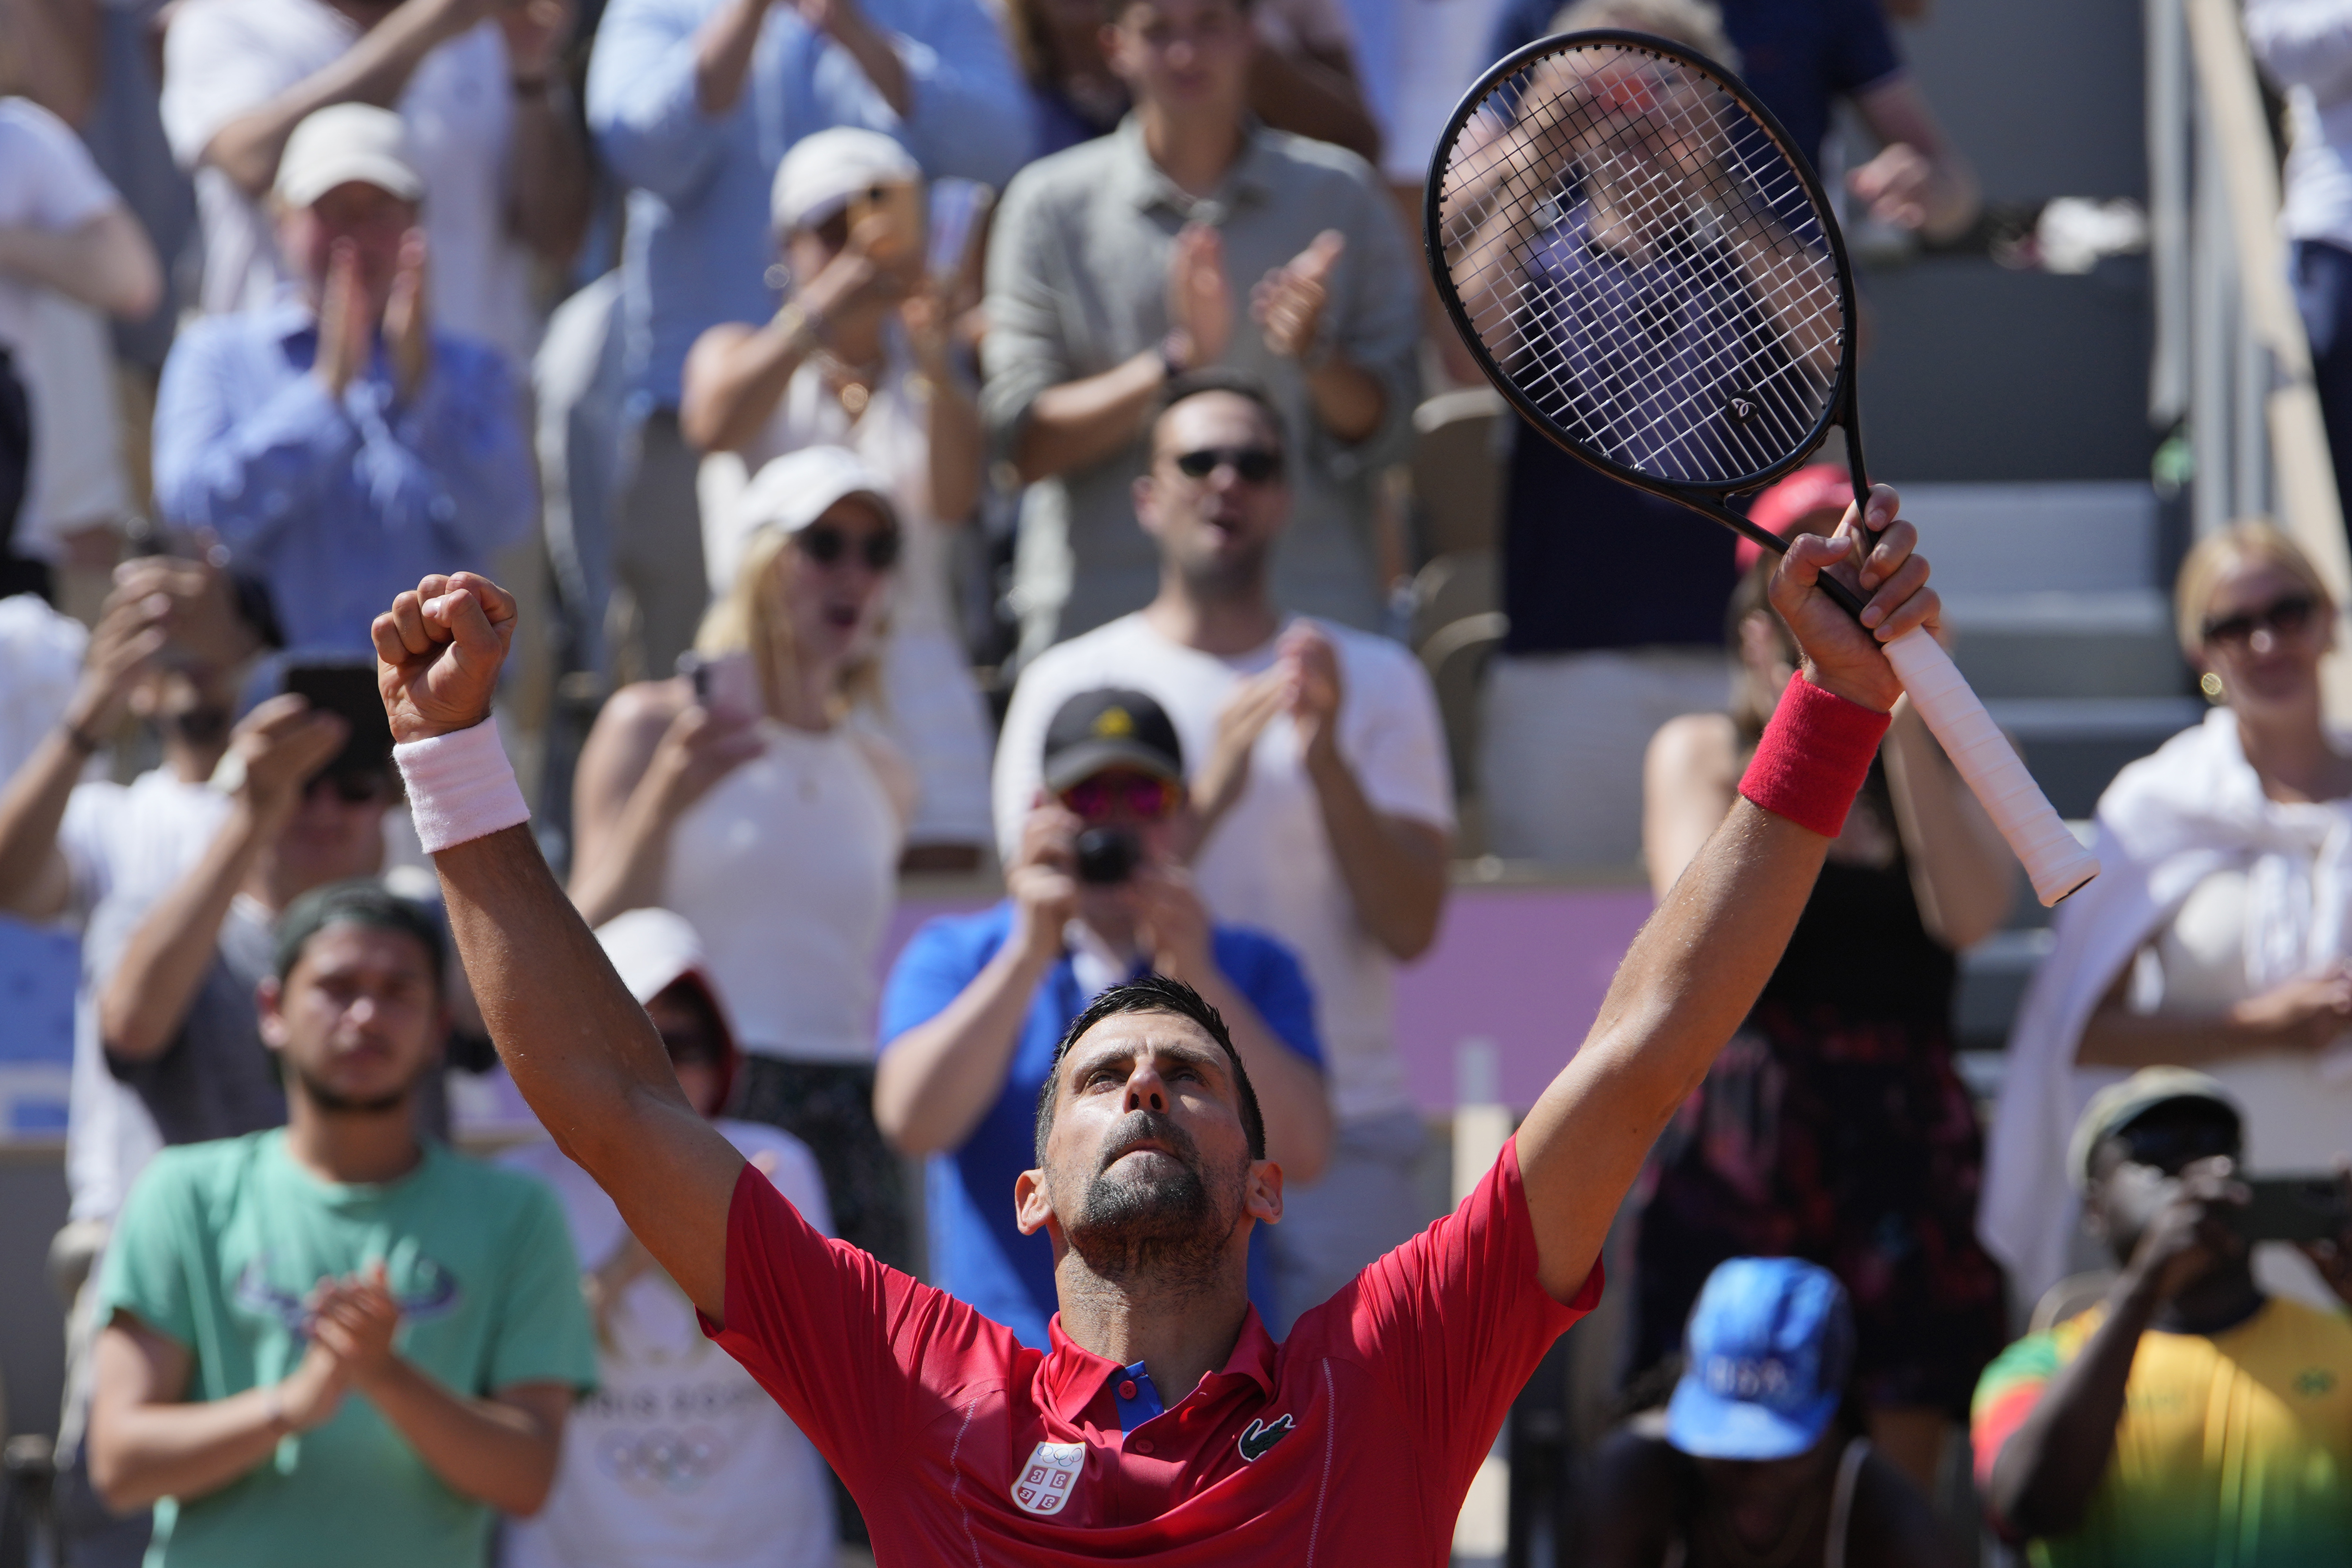 Olimpiadi, Djokovic domina Nadal. Ma lo spagnolo non dice addio a Parigi: “Non è il momento di arrendermi, deciderò io quando”